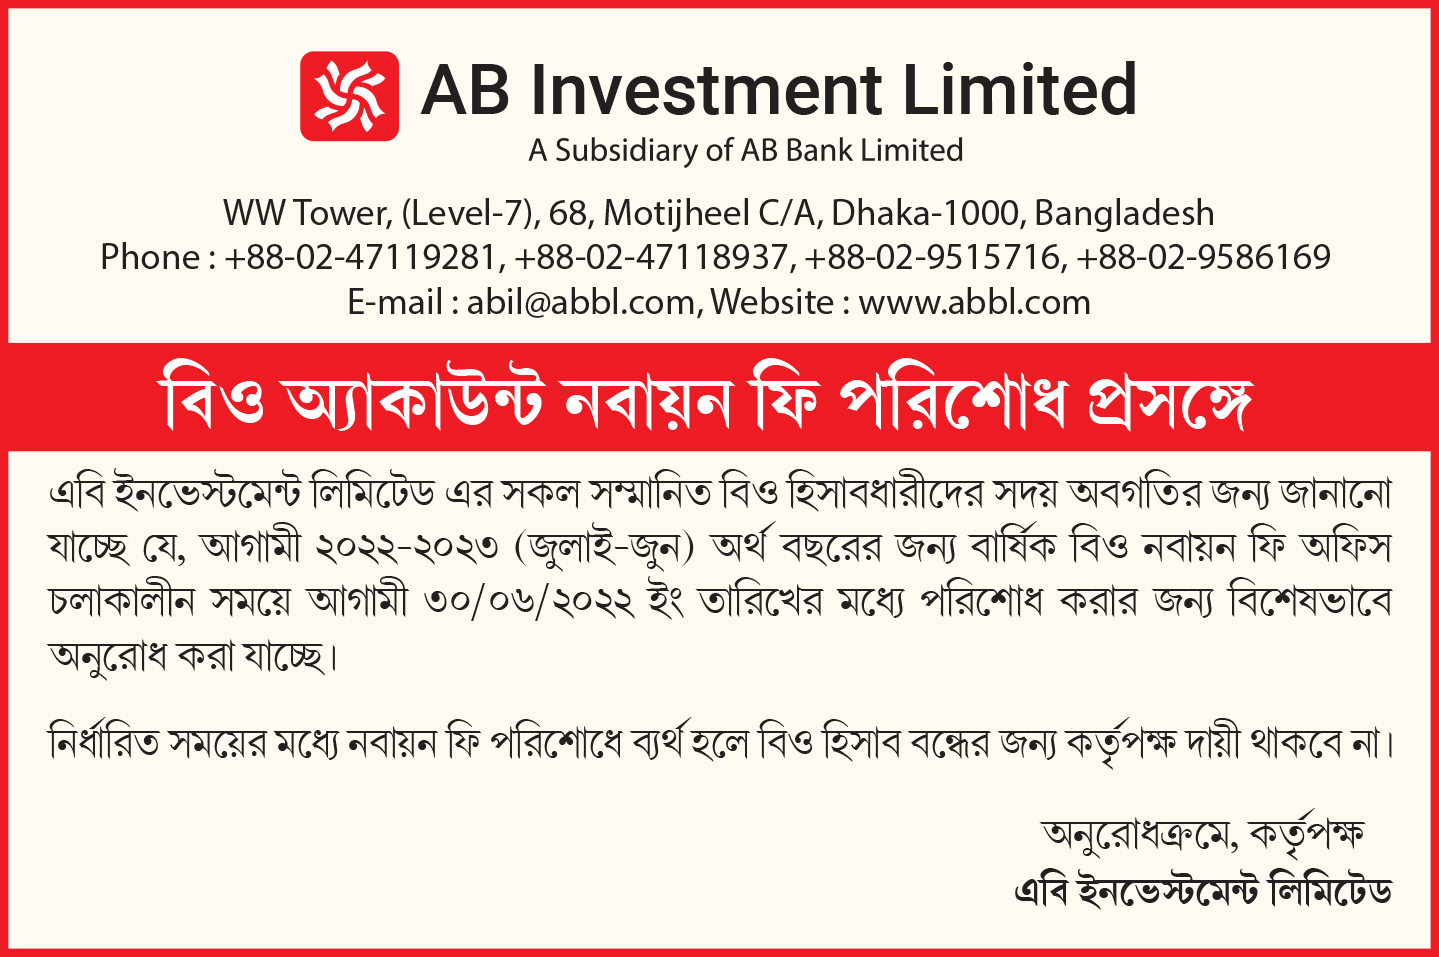 AB-ab Investment Ltd.